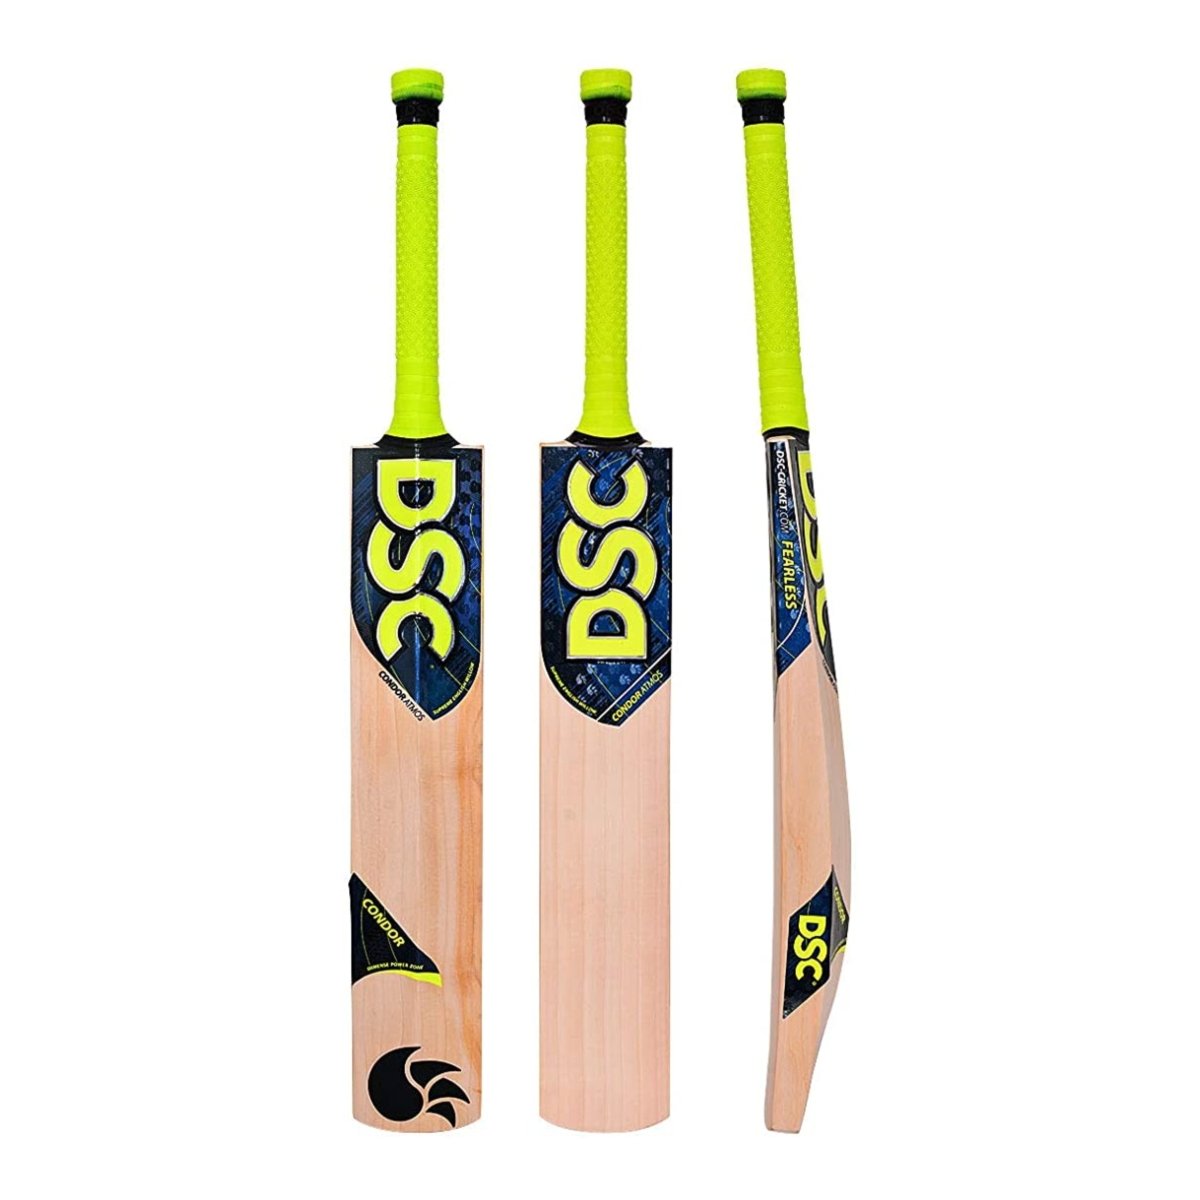 DSC Condor Atmos English Willow Cricket Bat.